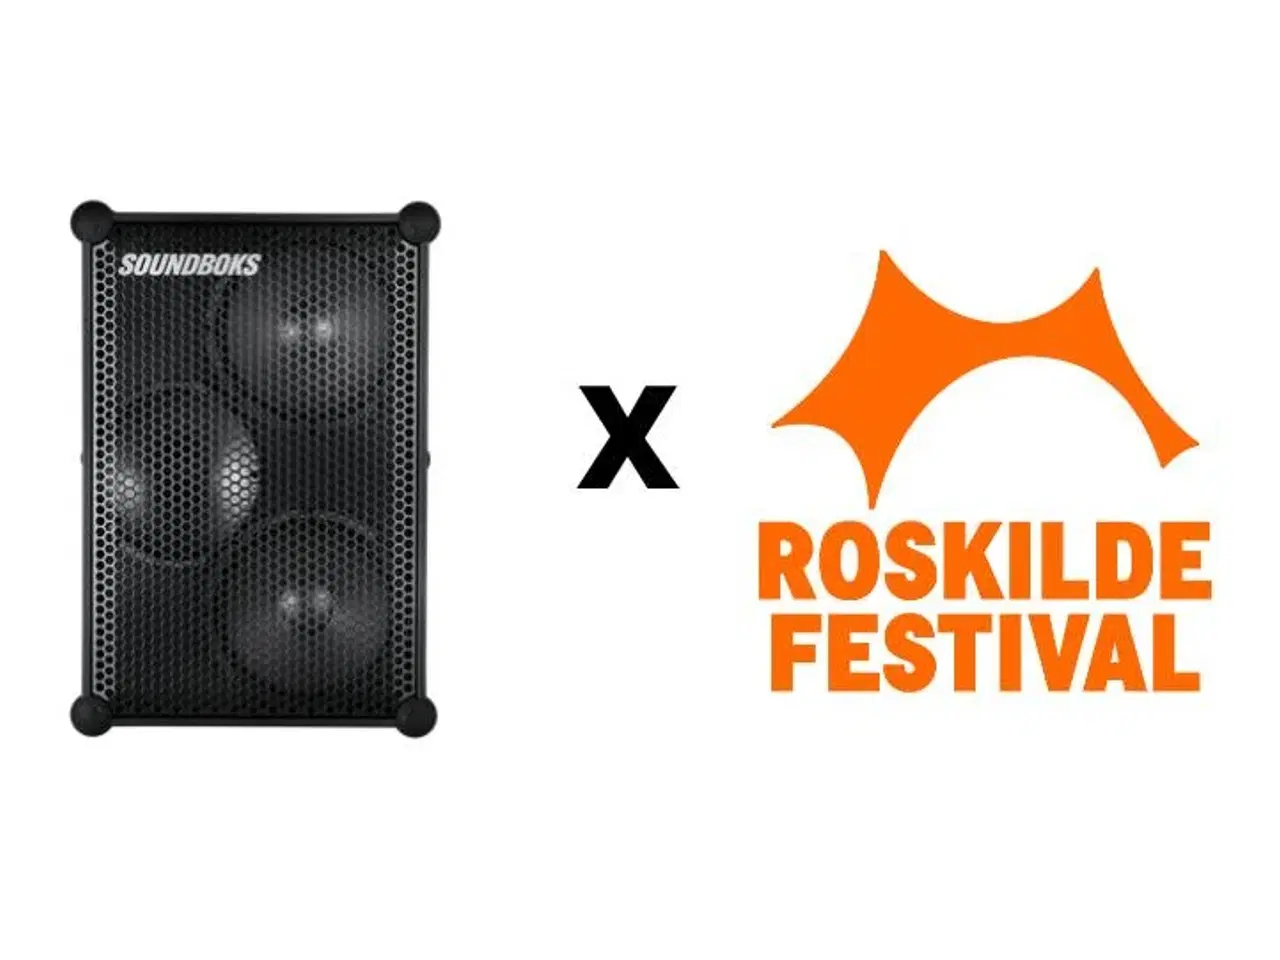 Billede 1 - Lej en soundboks til Roskilde Festival